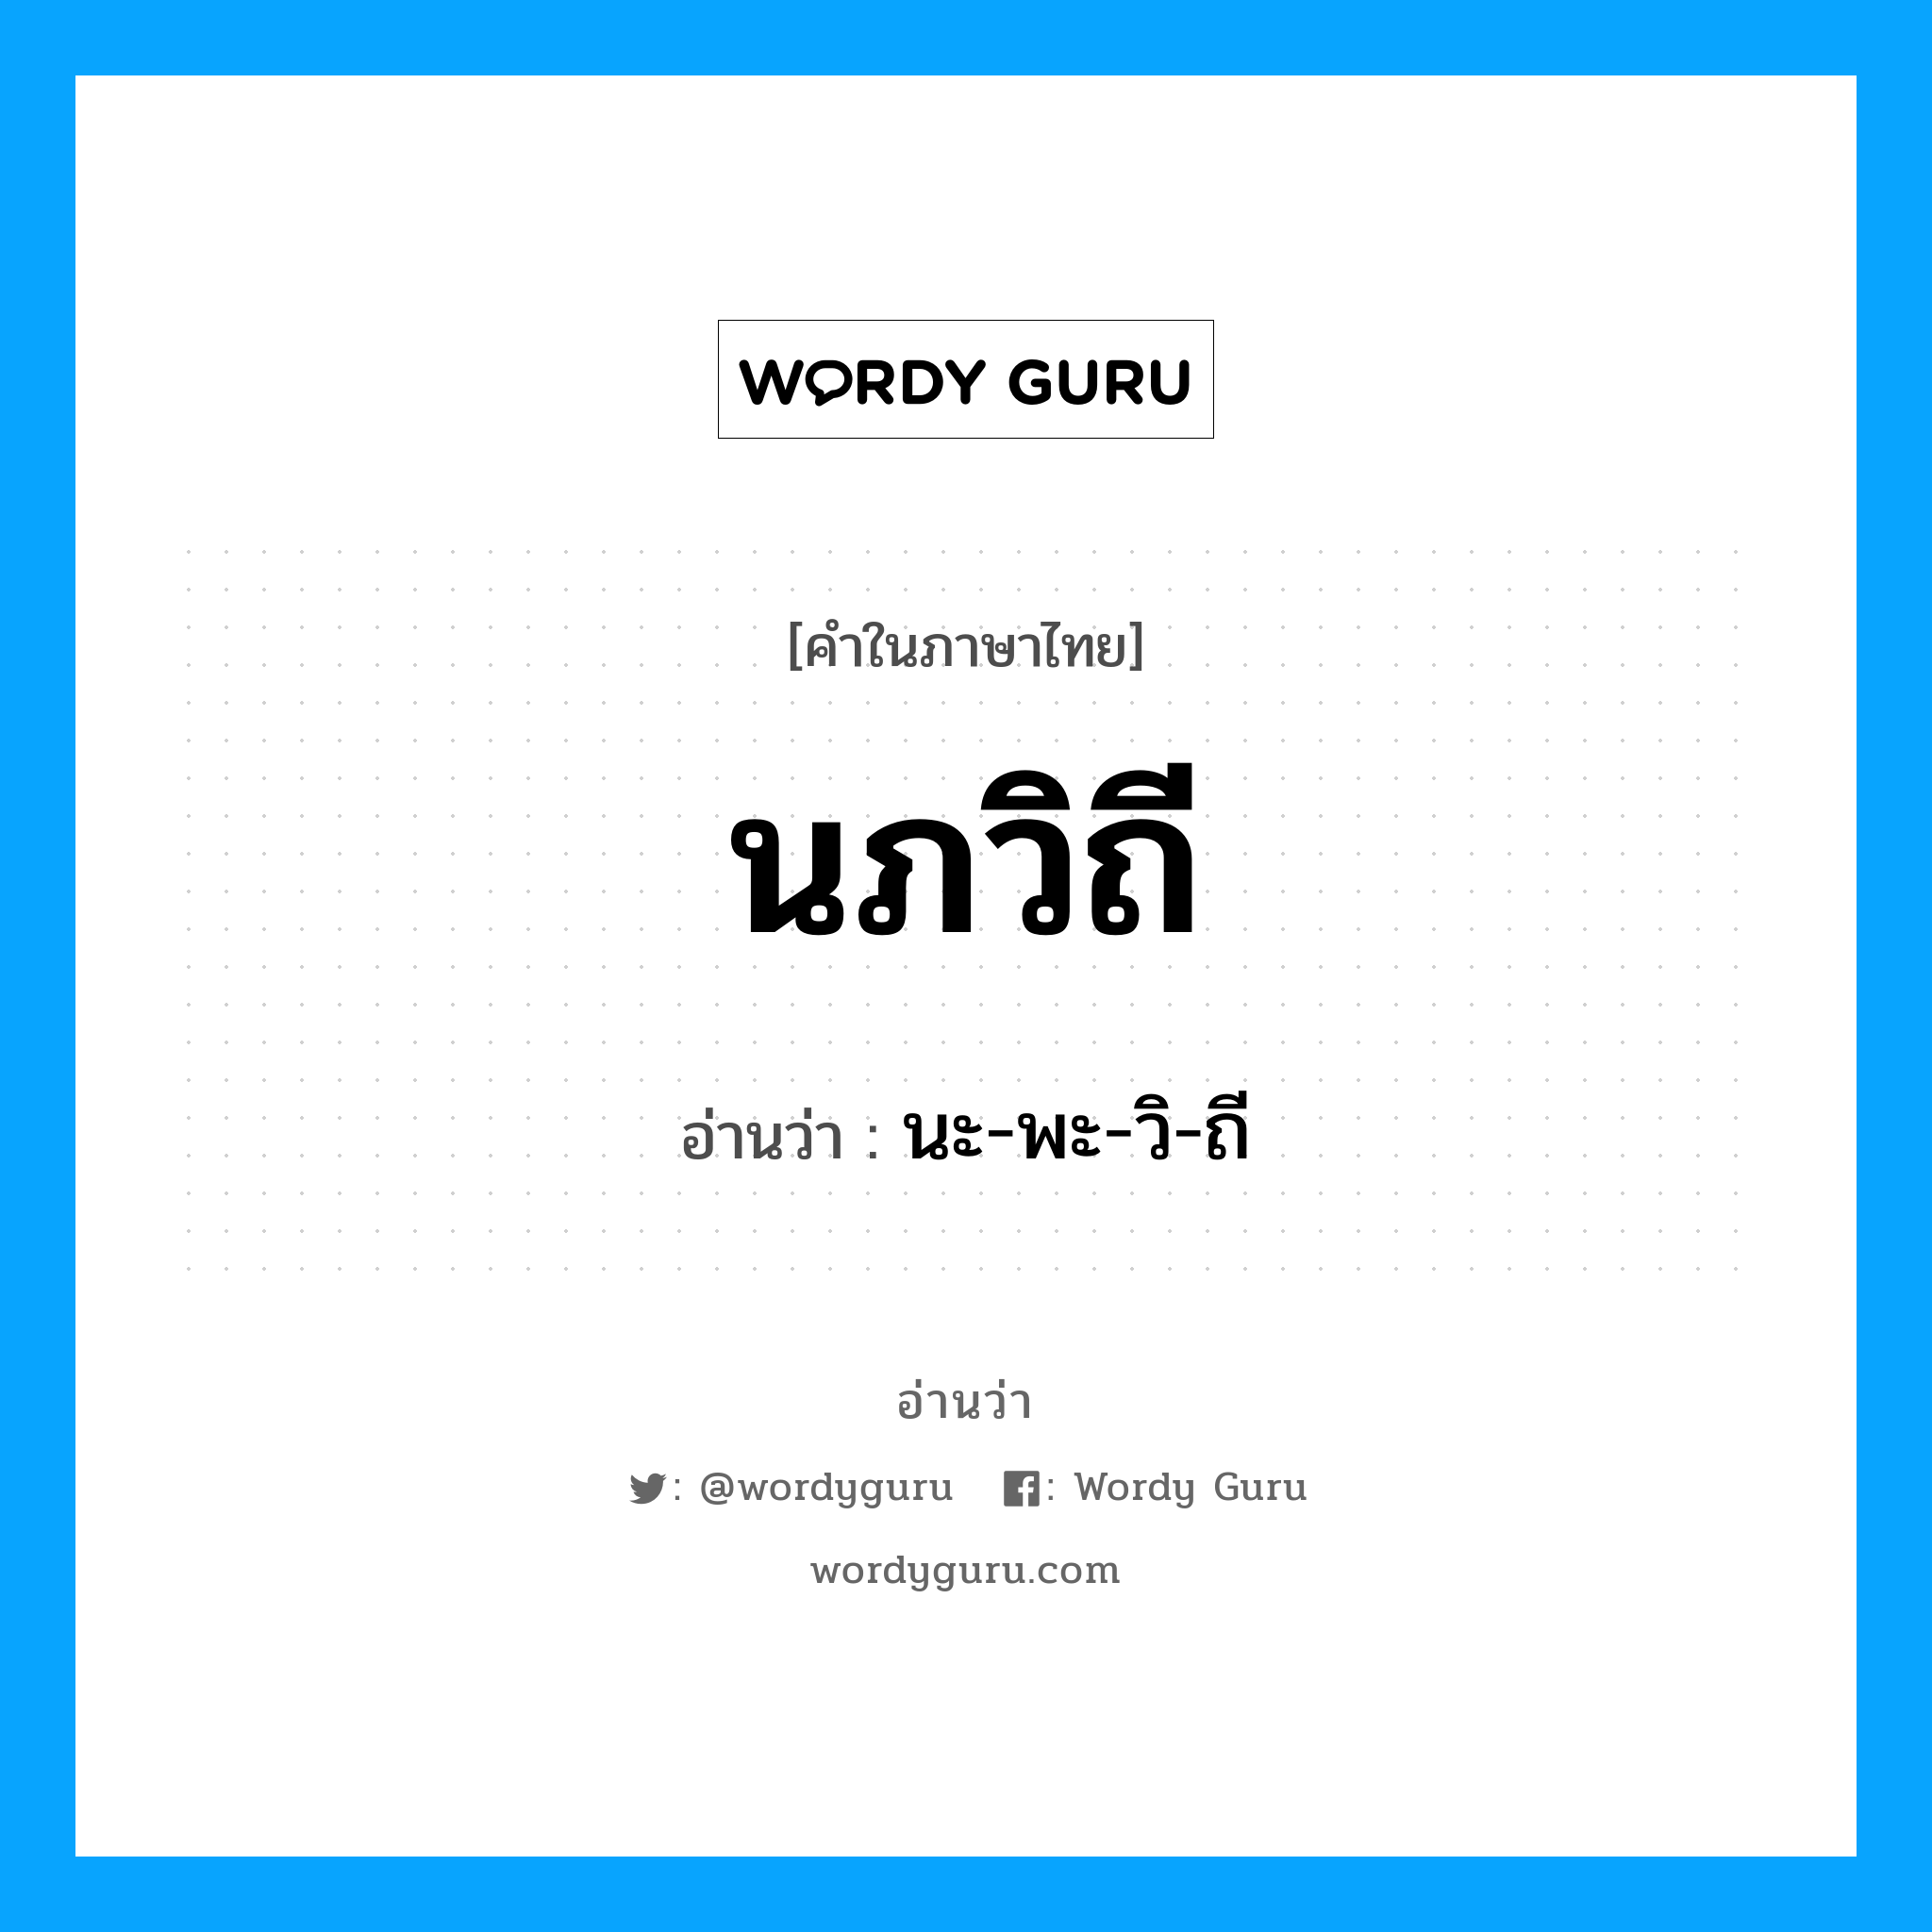 นะ-พะ-วิ-ถี เป็นคำอ่านของคำไหน?, คำในภาษาไทย นะ-พะ-วิ-ถี อ่านว่า นภวิถี